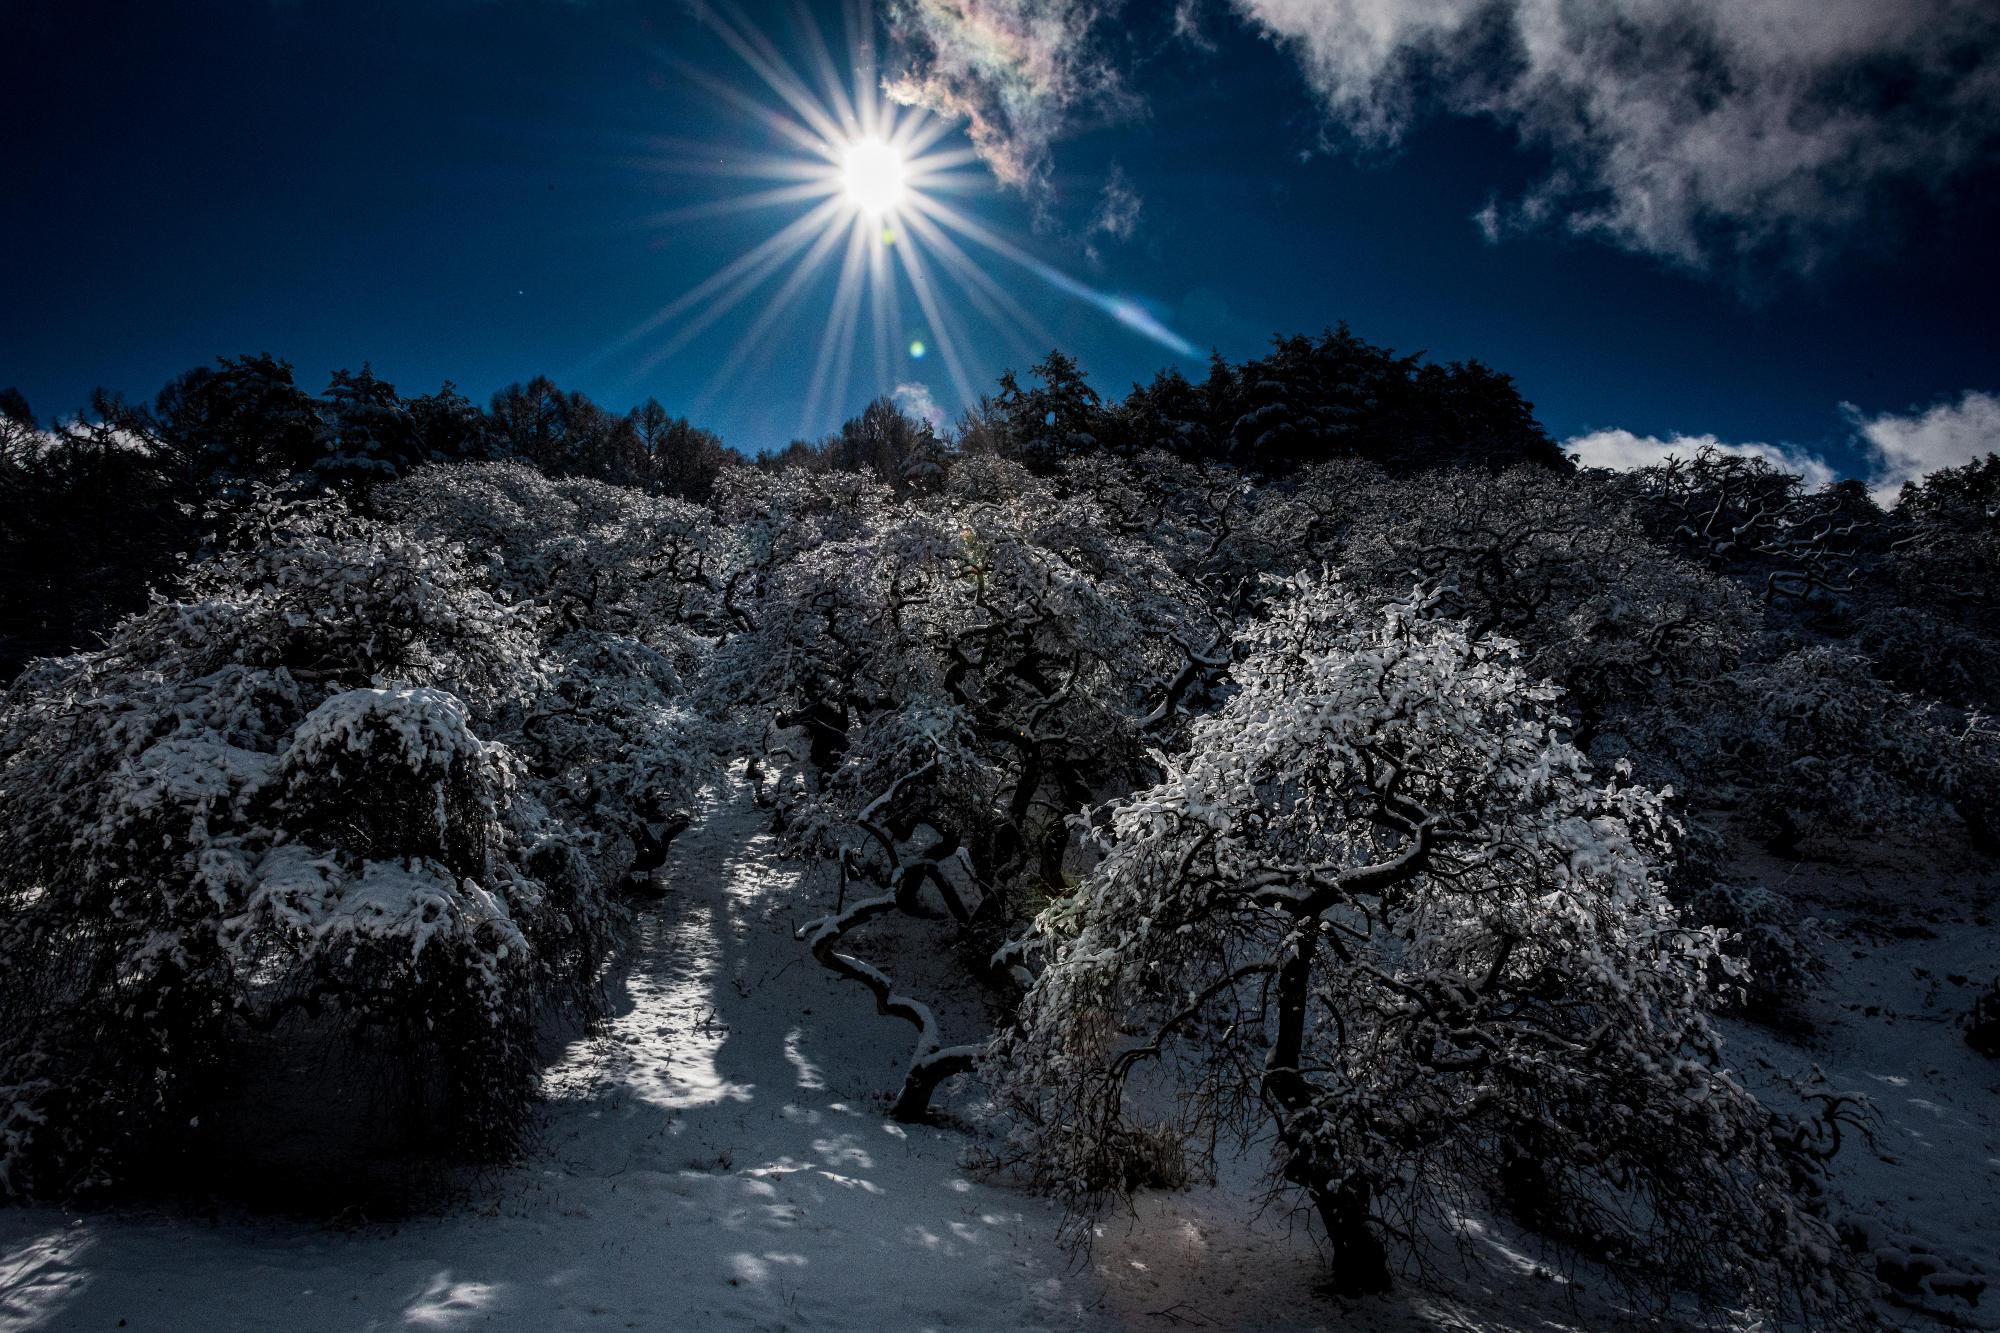 山の斜面で雪に覆われたしだれ栗の木々が、真っ青な空に輝く太陽の光に照らされている様子の写真